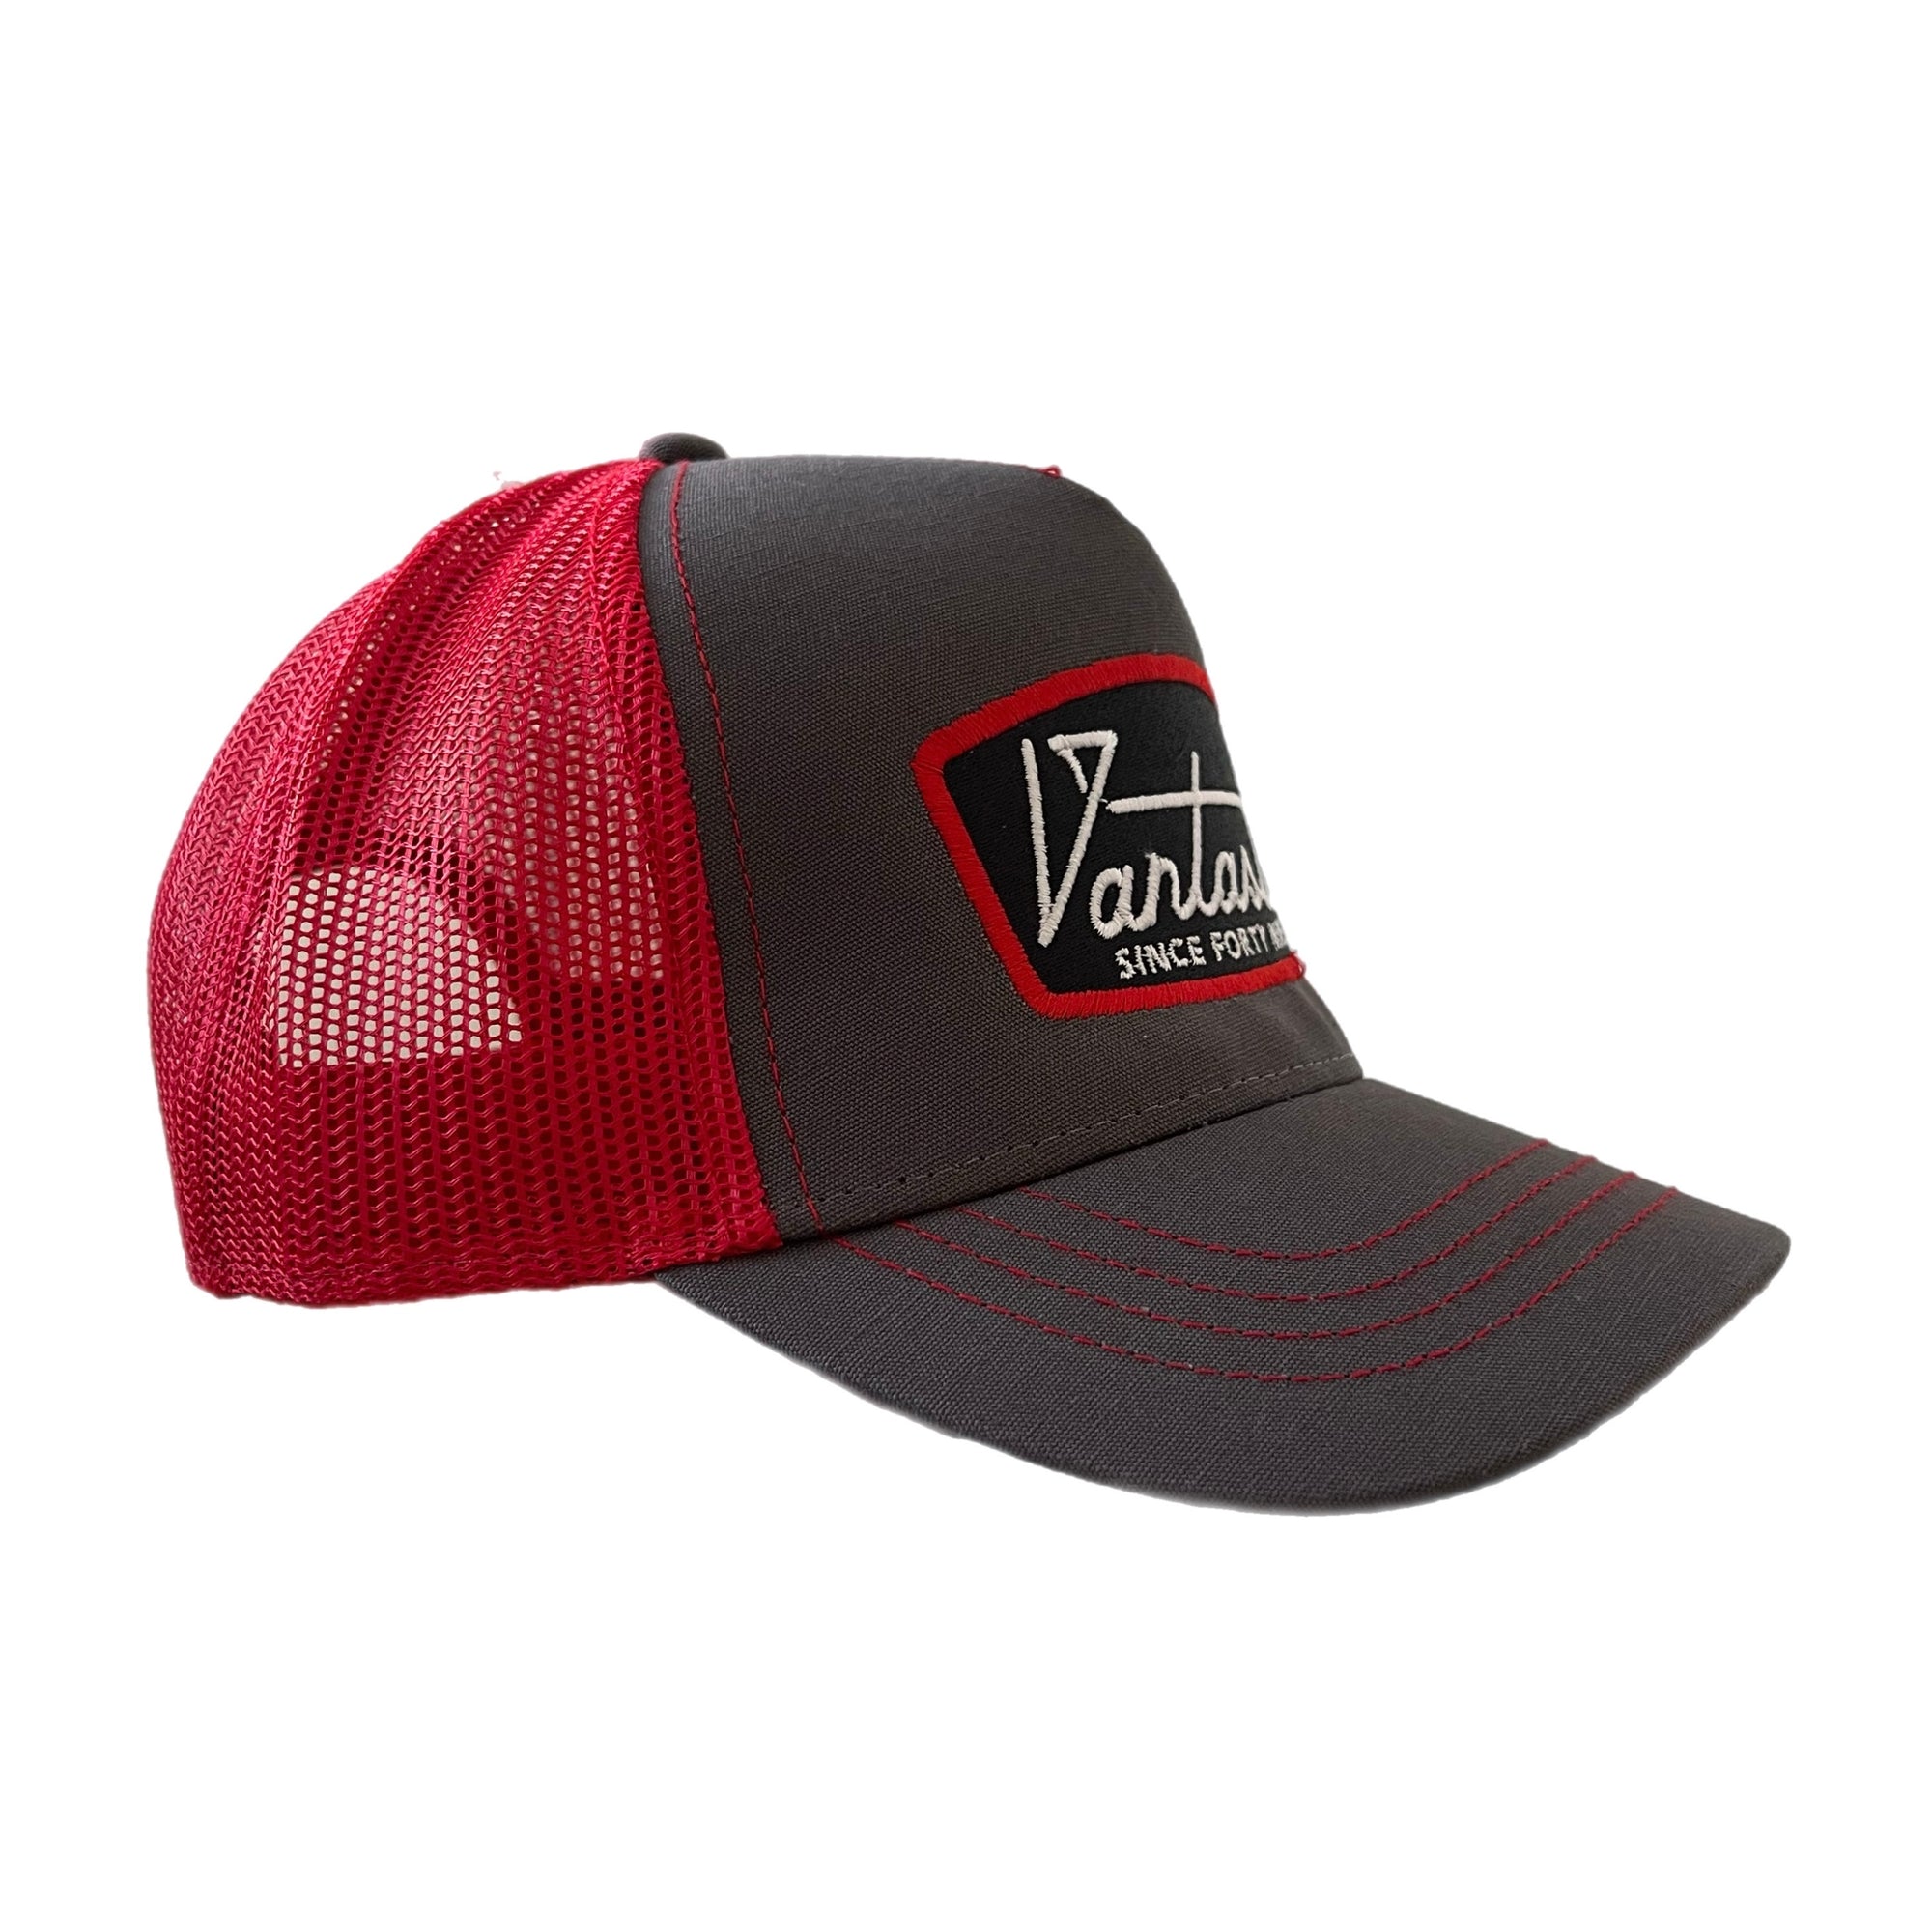 Deluxe Trucker cap - charcoal/red